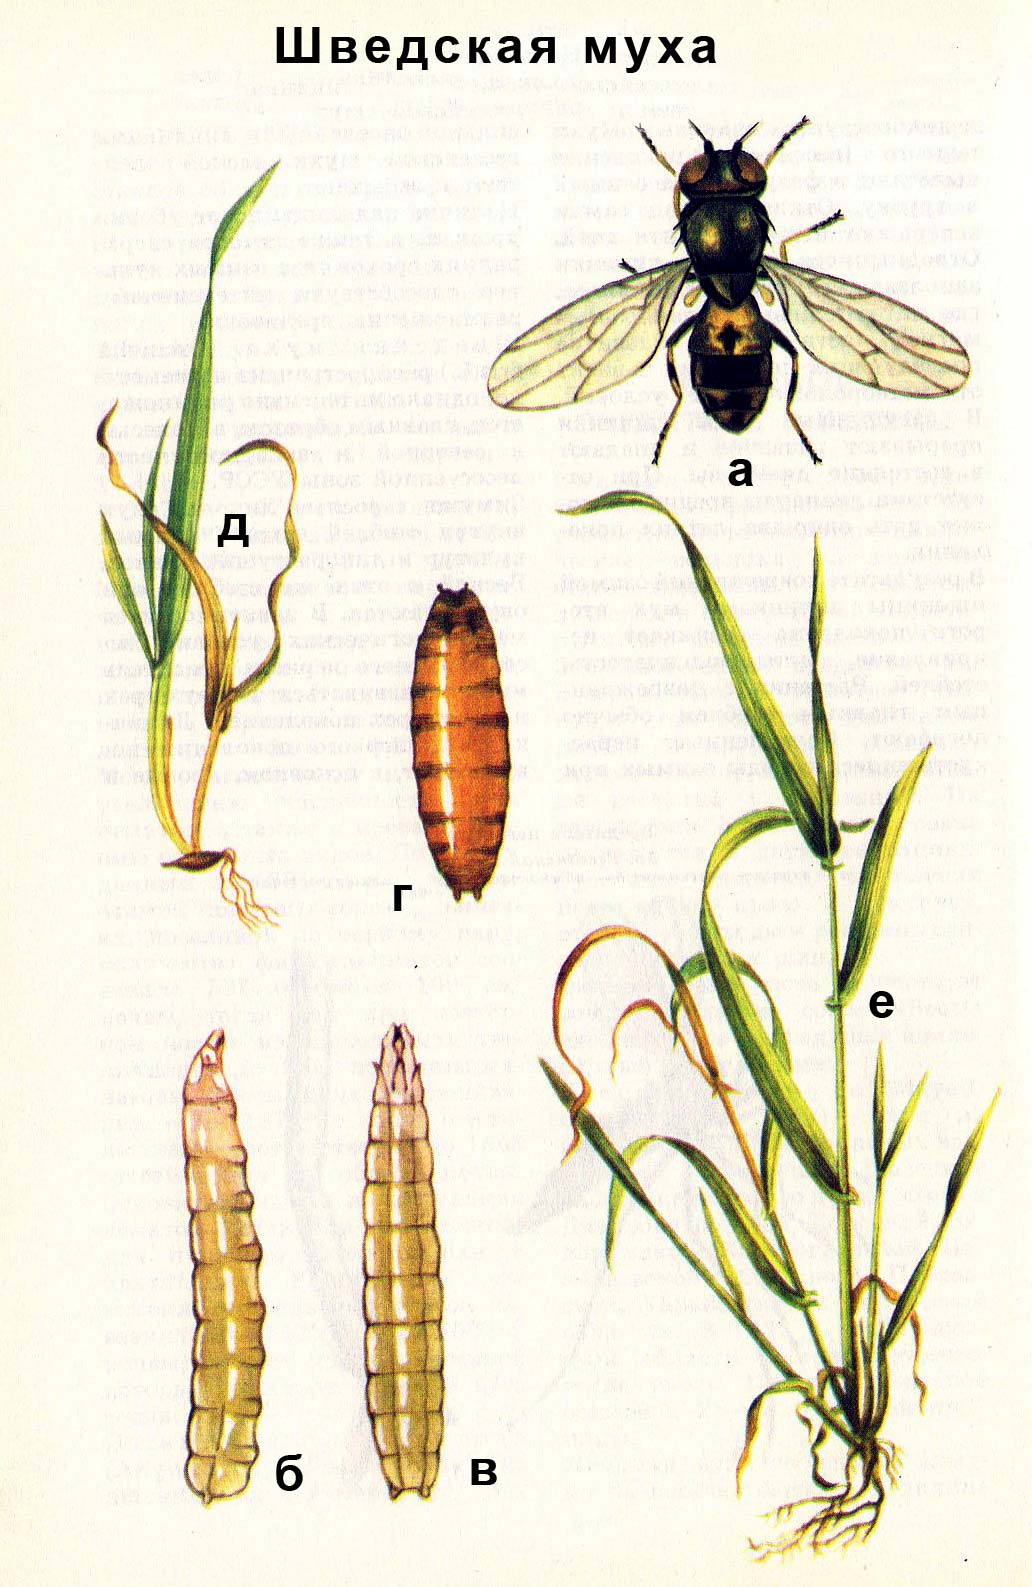 Шведская муха: а) взрослое насекомое; б) личинка сбоку; в) личинка сверху; г) ложнококон; д, е) повреждения растения